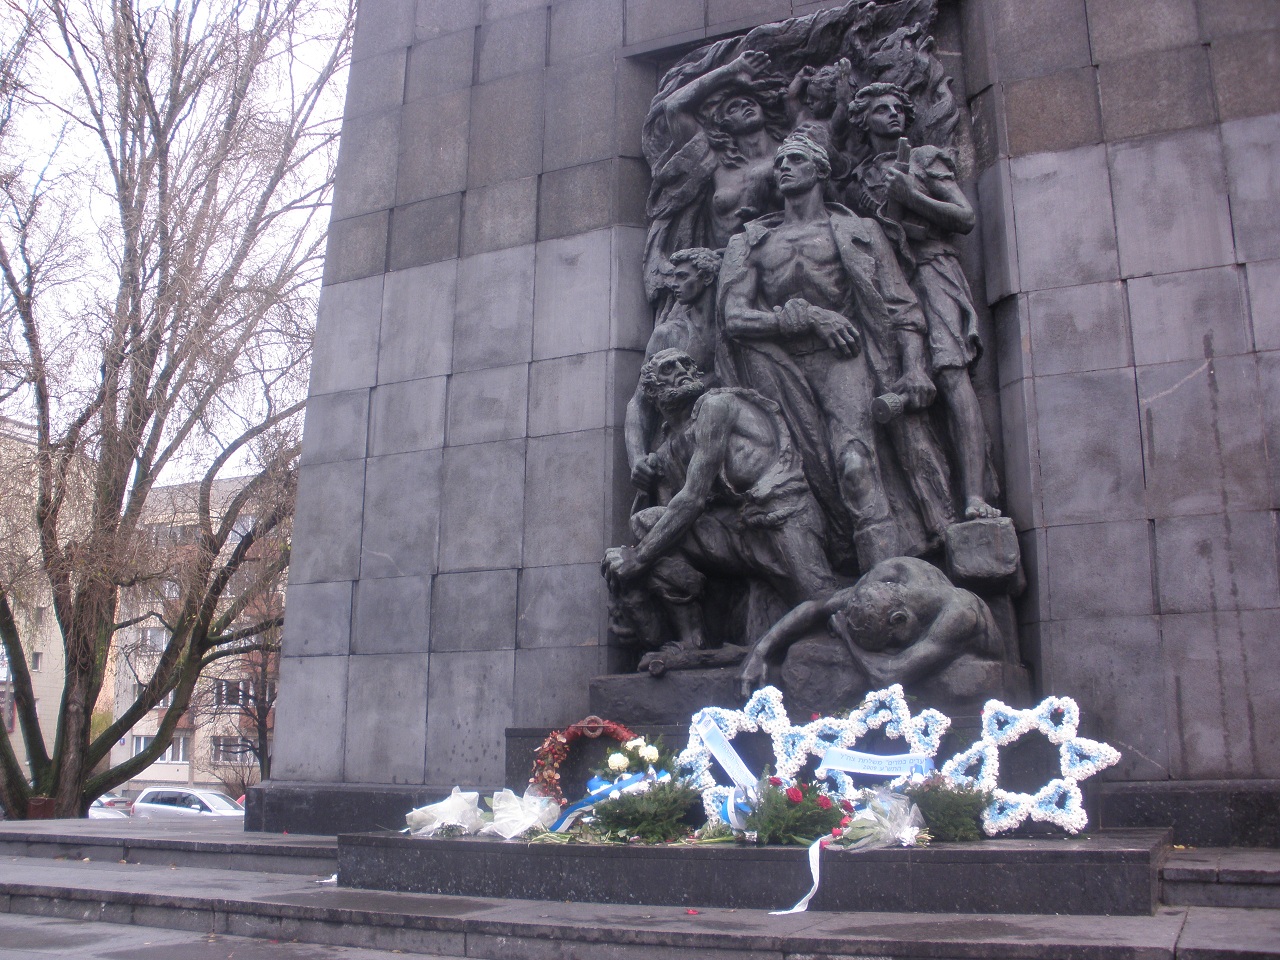 האנדרטה שהוקמה על חורבות גטו ורשה בידי האמן רפופורט. מקום שבו נערכים טקסי זכרון רבים. צילום: אבי בליזובסקי, נובמבר 2009